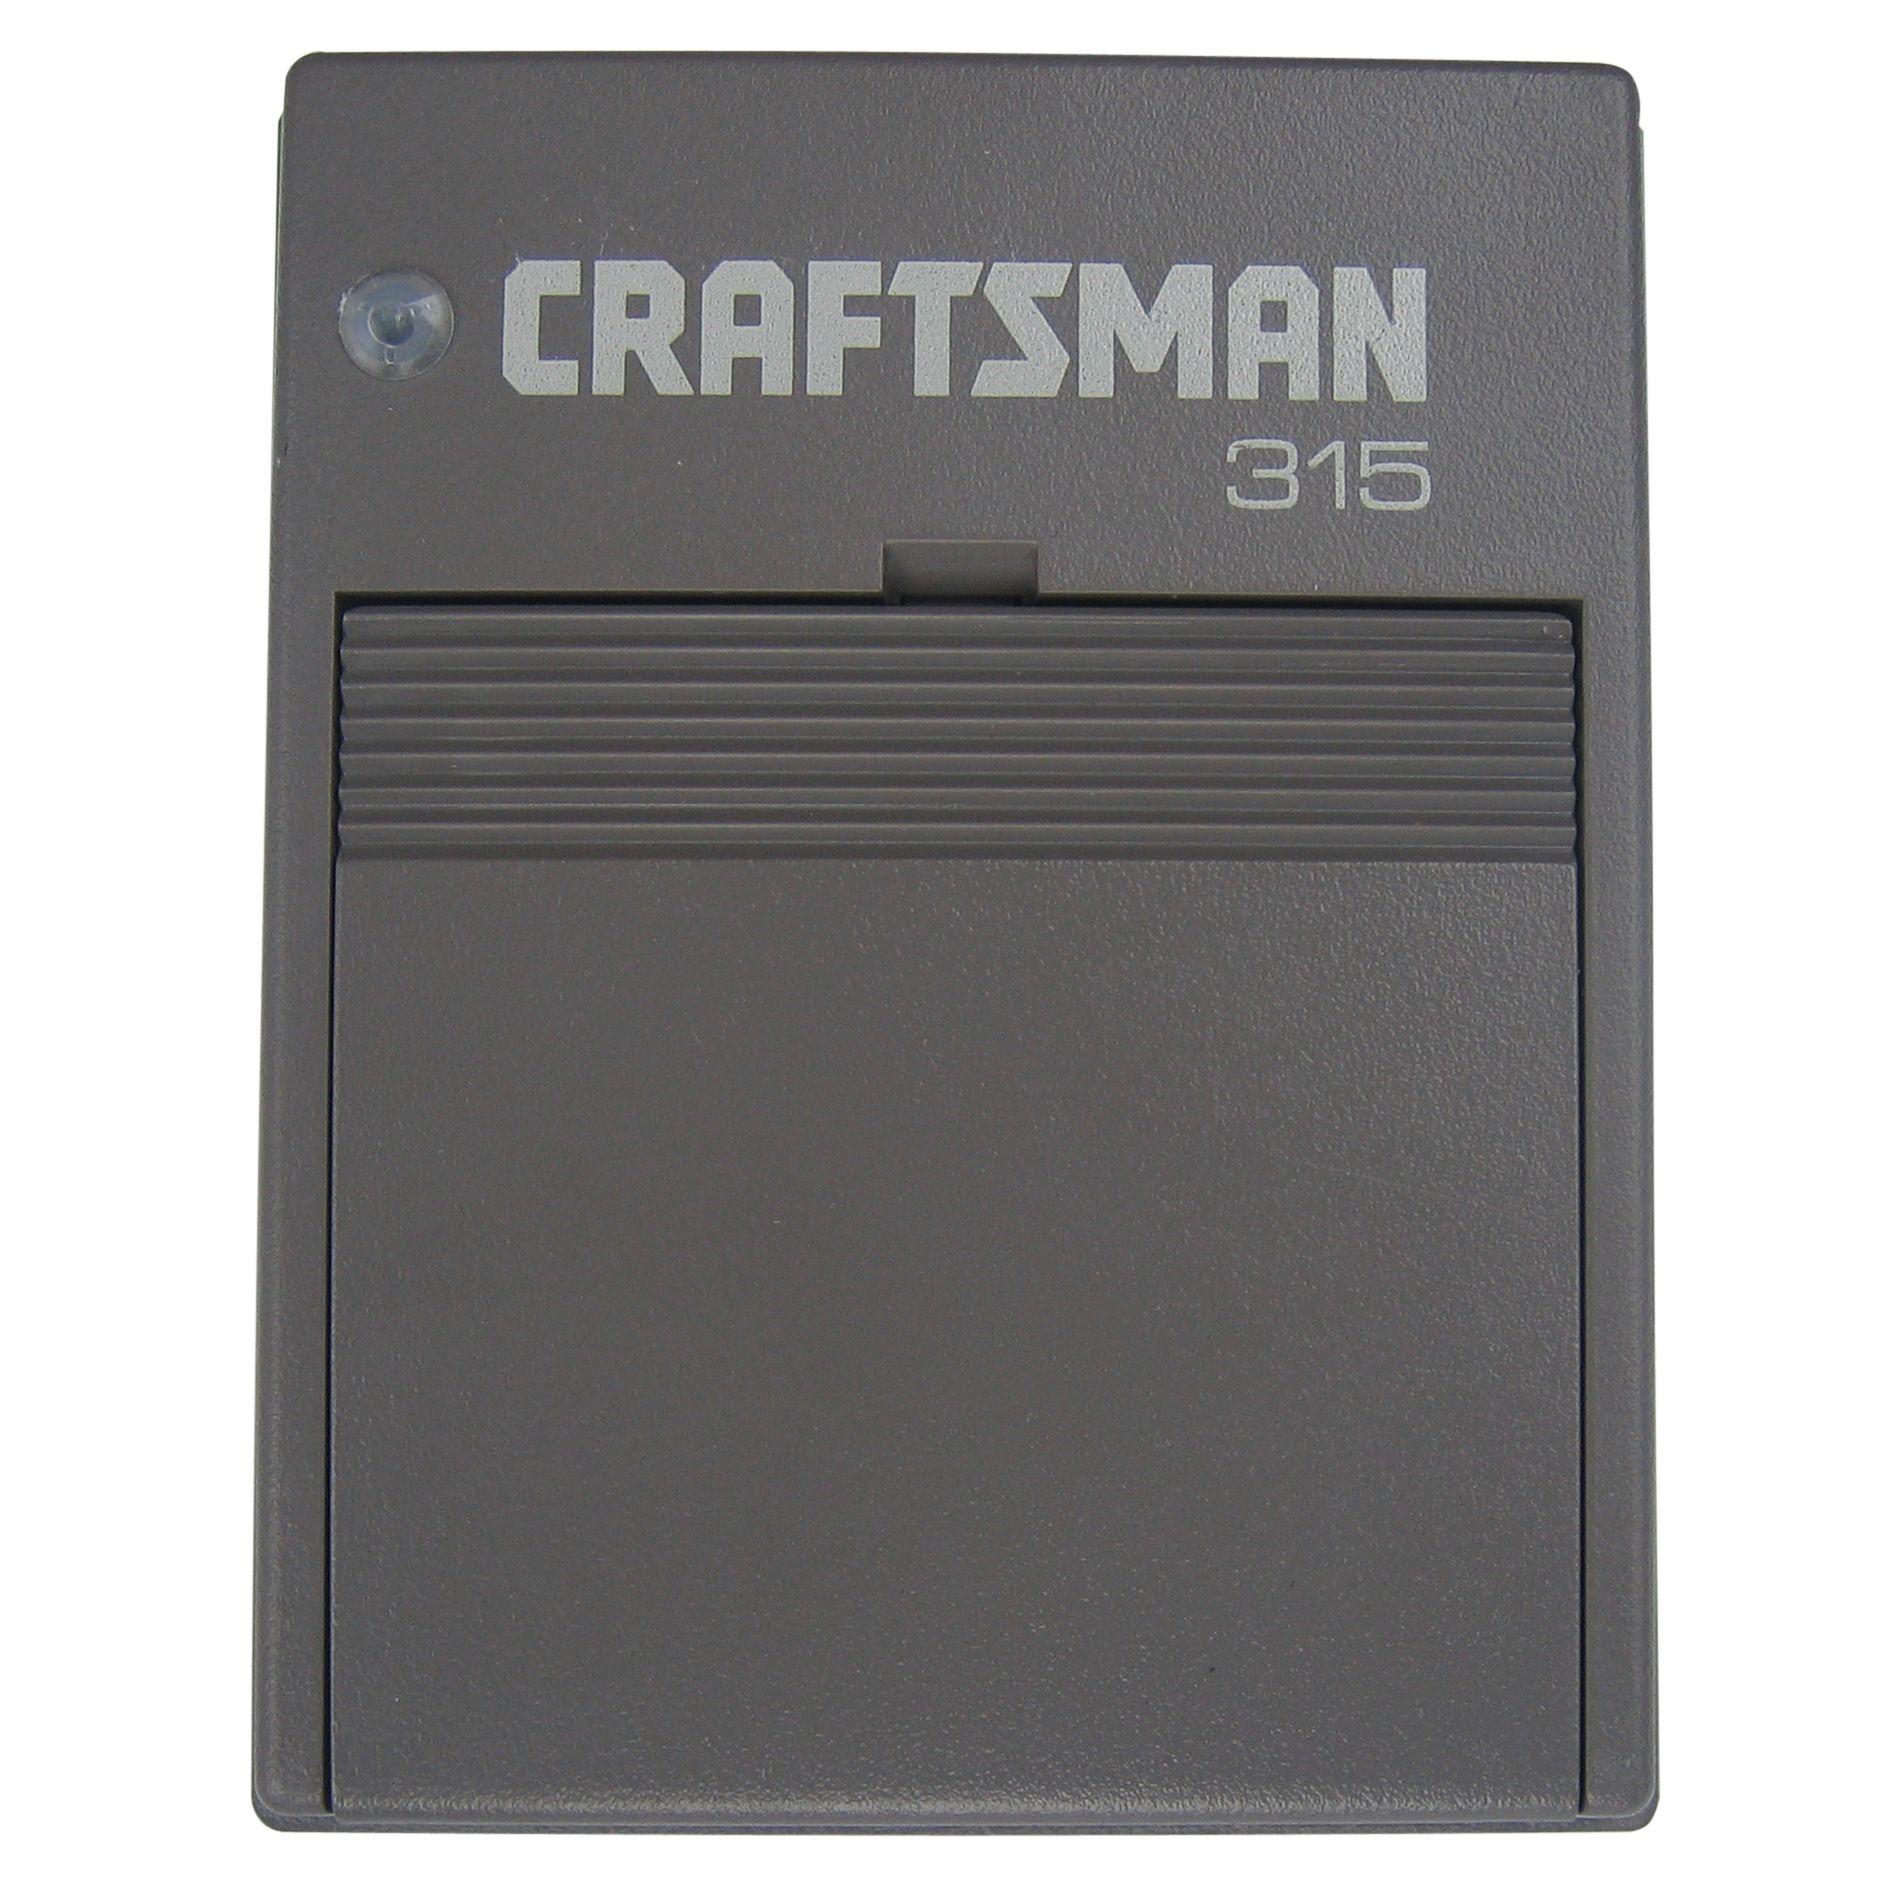 Craftsman Replacement Garage Door Opener
 Craftsman Universal Receiver 315MHz Tools Garage Door